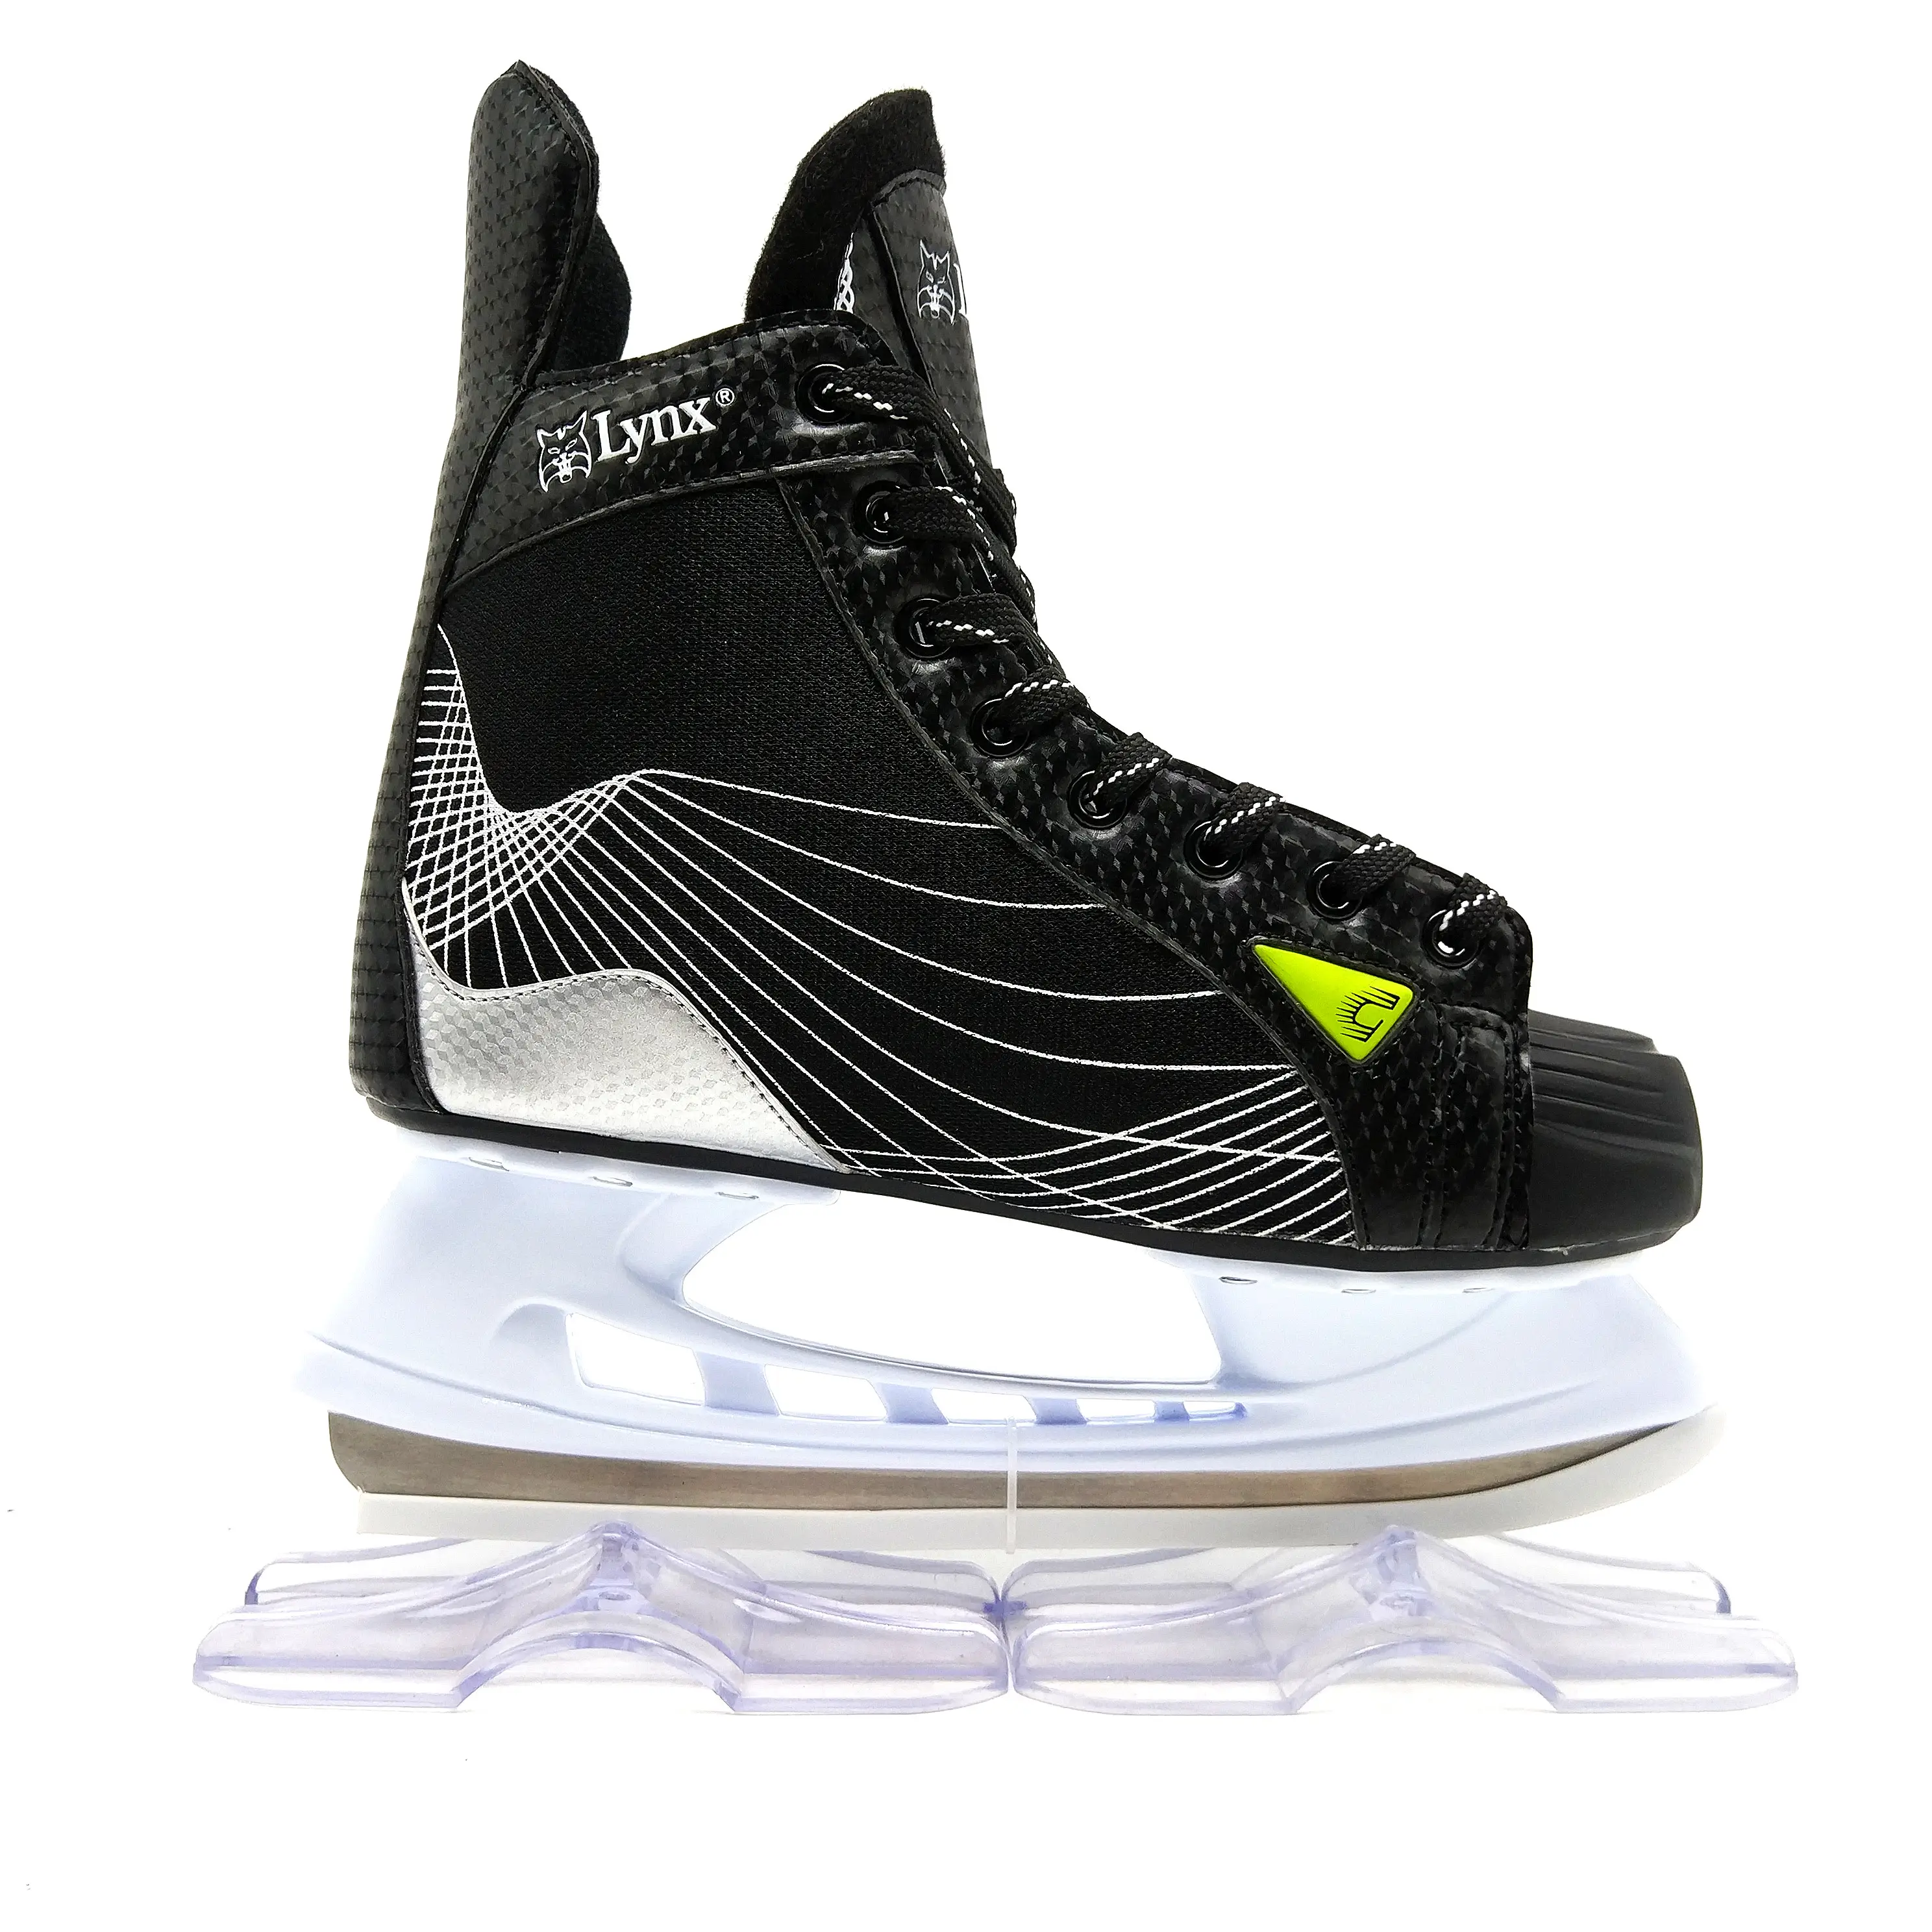 2022 Hot Koop Soy Luna Ice Skate Schoenen Voor Kinderen En Professionele Volwassenen Ijshockey Schaatsen